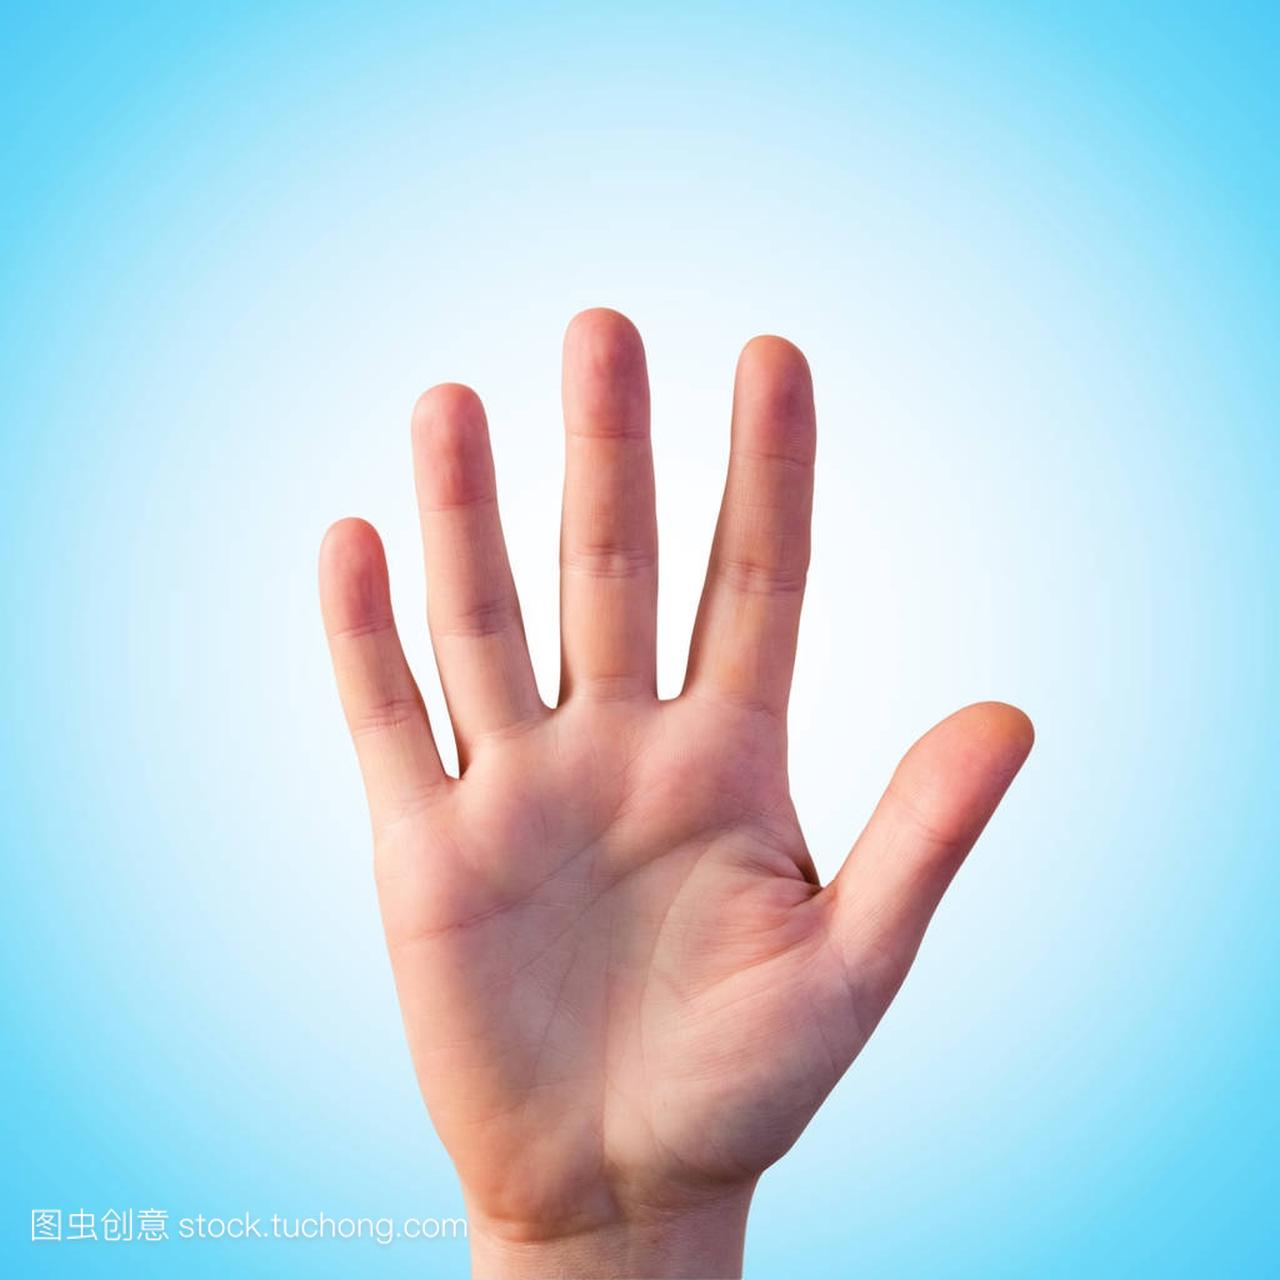 白底手势人物手势两根手指手指交叉图片免费下载 - 觅知网